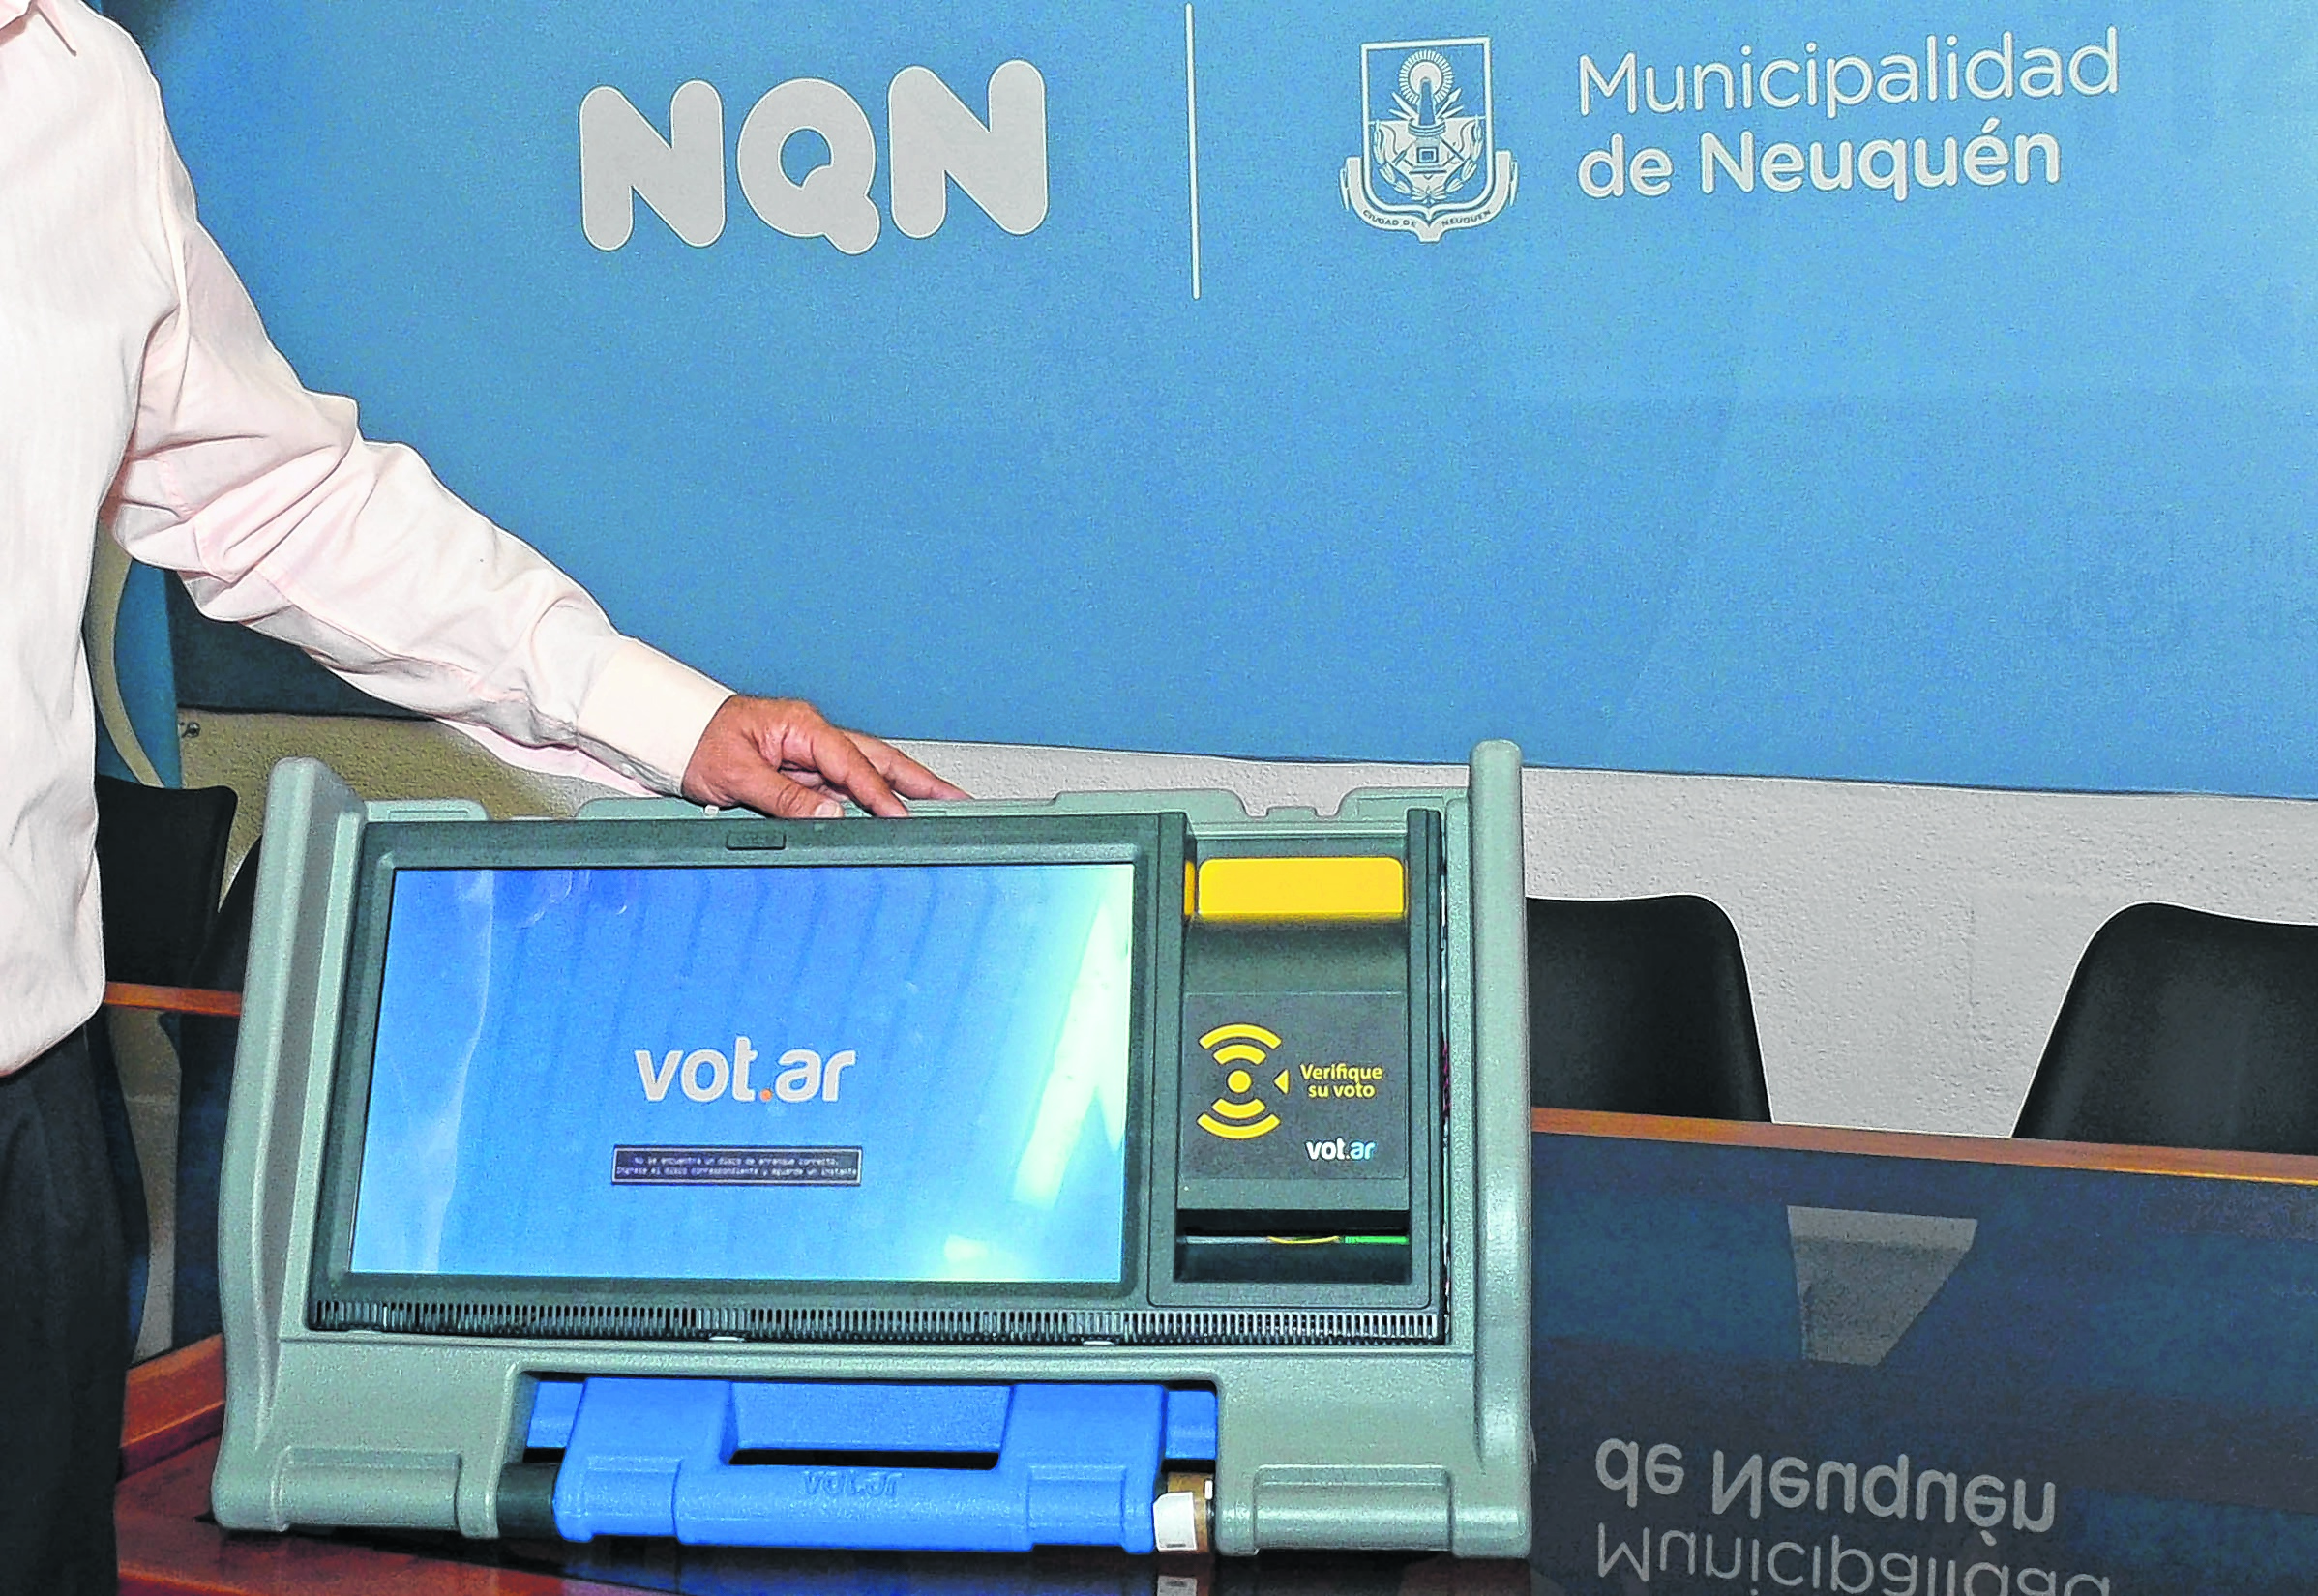 Las elecciones se realizan en Neuquén por el sistema de Boleta ünica Electrónica.